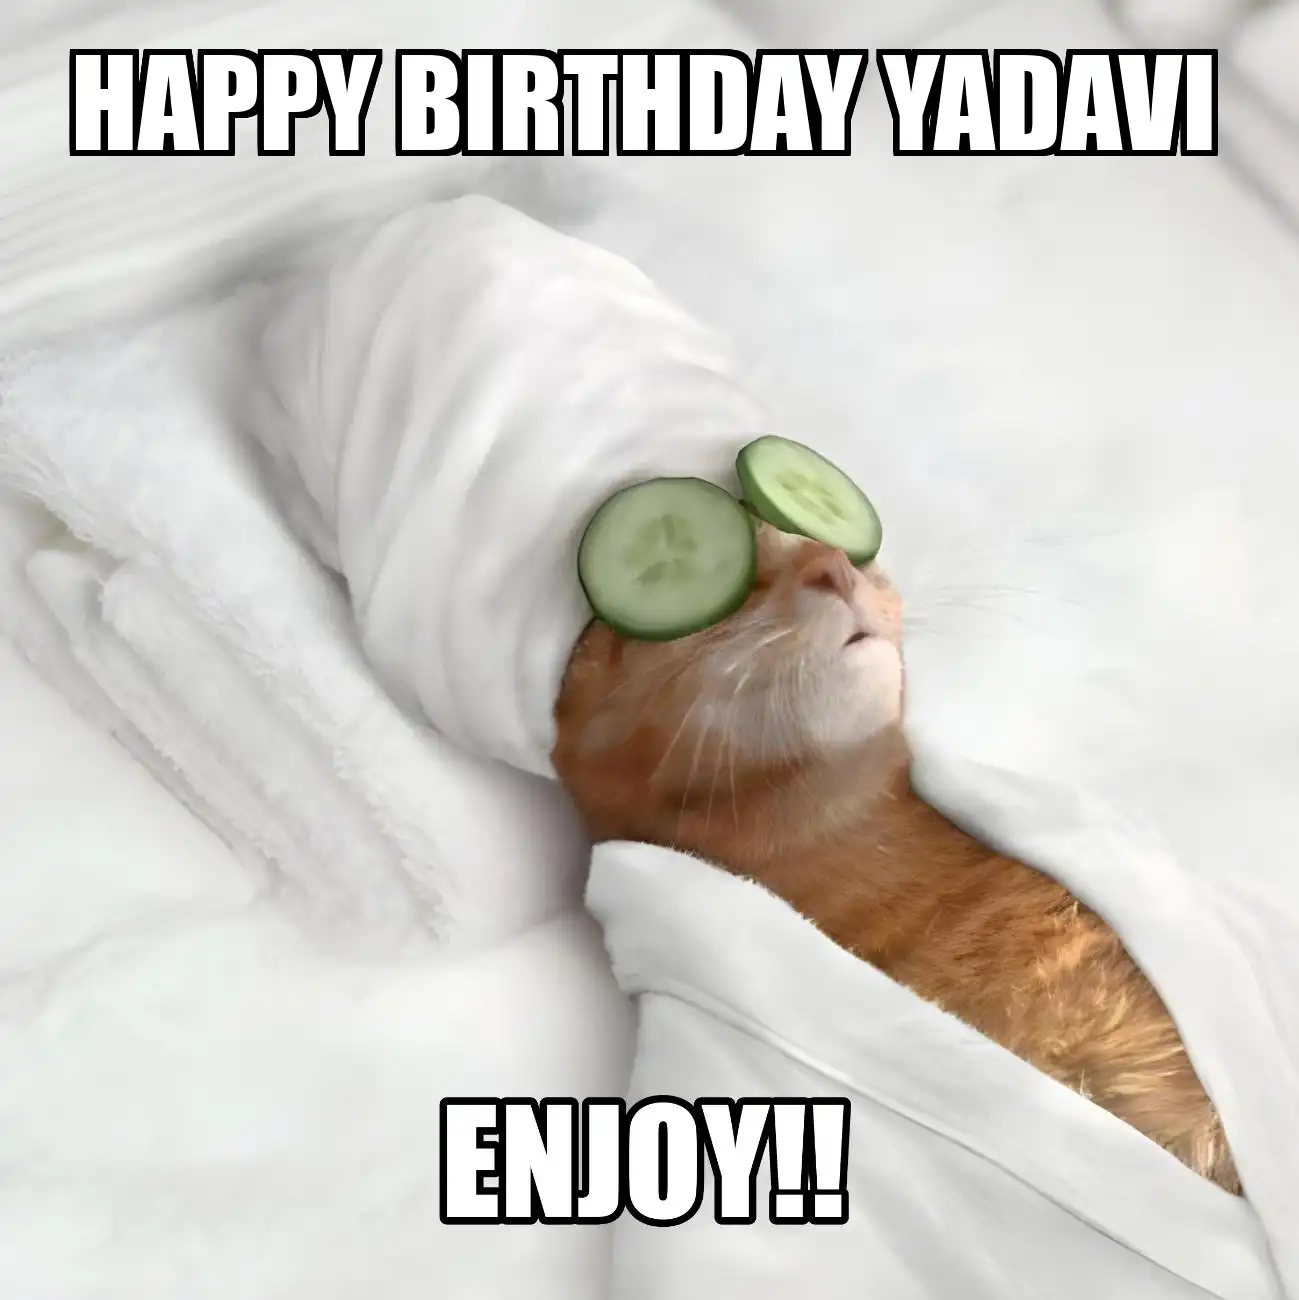 Happy Birthday Yadavi Enjoy Cat Meme